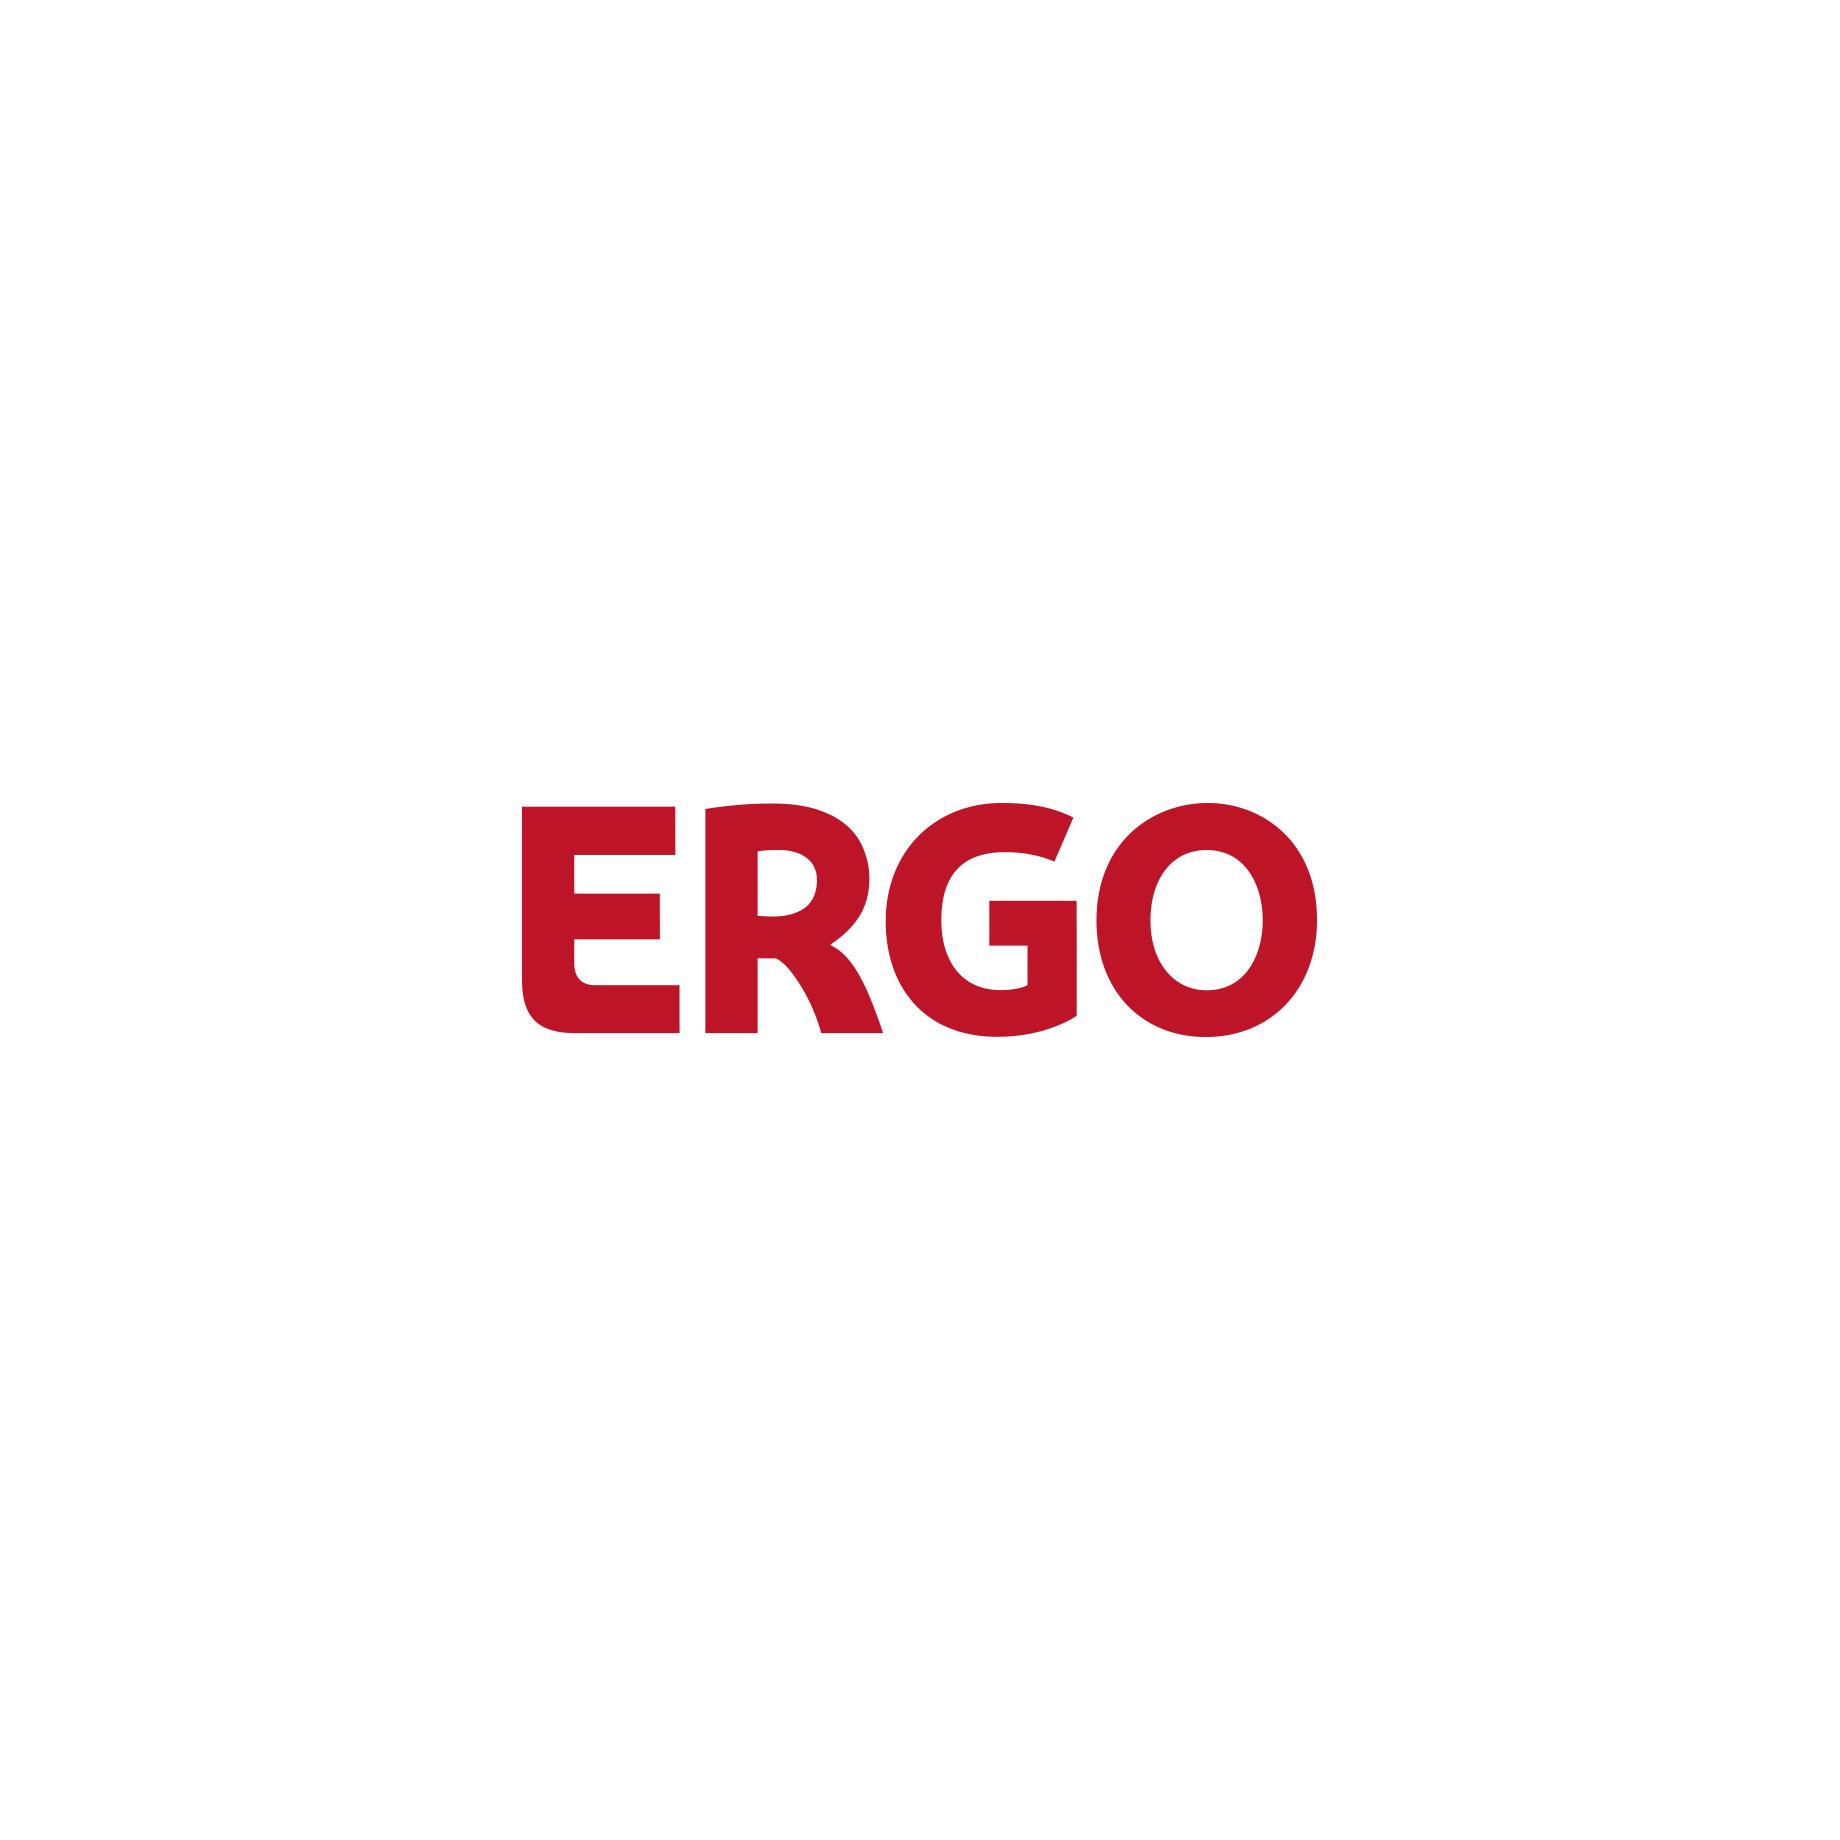 ERGO Versicherung René Krüger in Großräschen - Logo